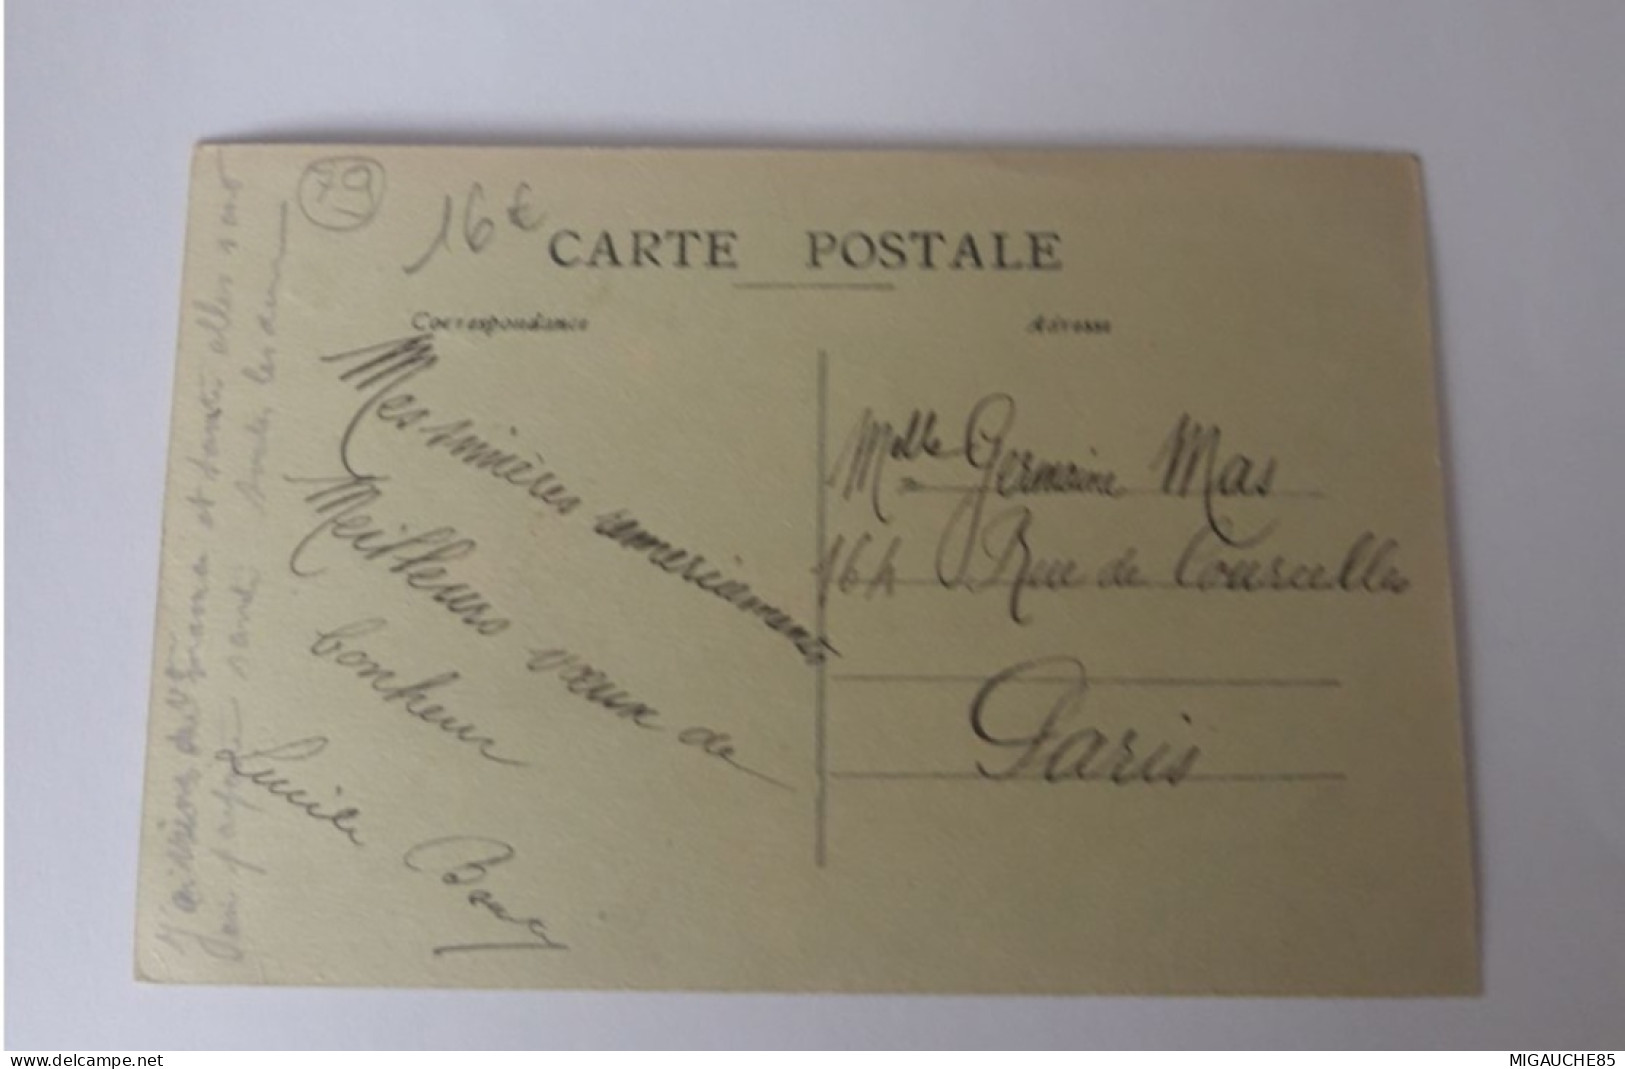 Carte  Postale   CHEF BOUTONNE   Vue Intérieure De La Gare  Des Voyageurs   1929 - Chef Boutonne